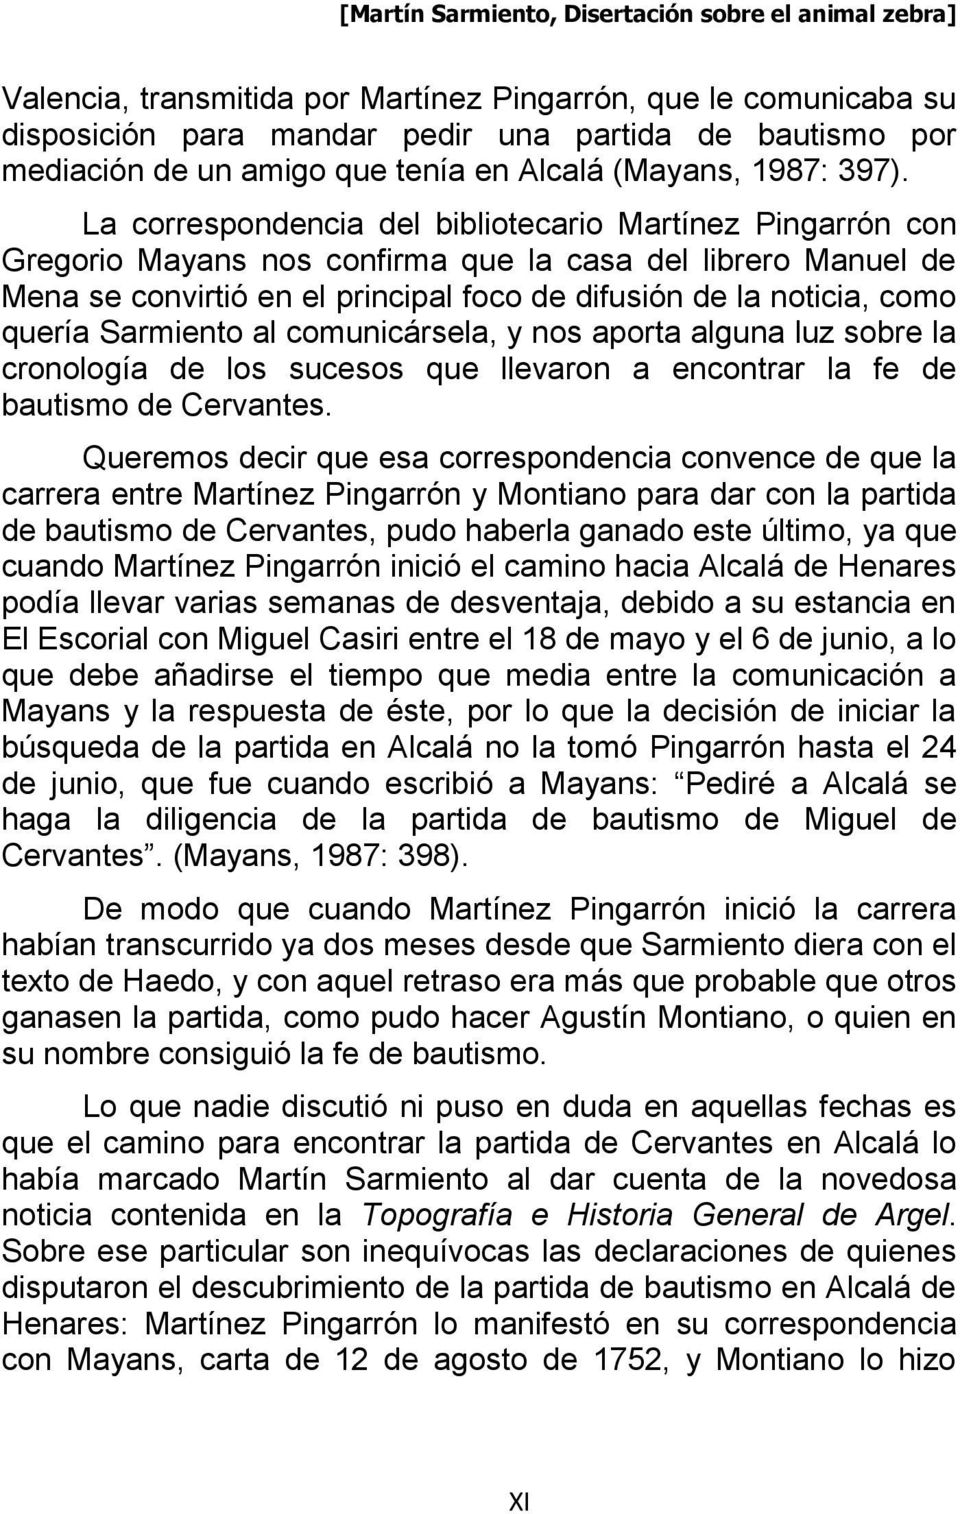 La correspondencia del bibliotecario Martínez Pingarrón con Gregorio Mayans nos confirma que la casa del librero Manuel de Mena se convirtió en el principal foco de difusión de la noticia, como